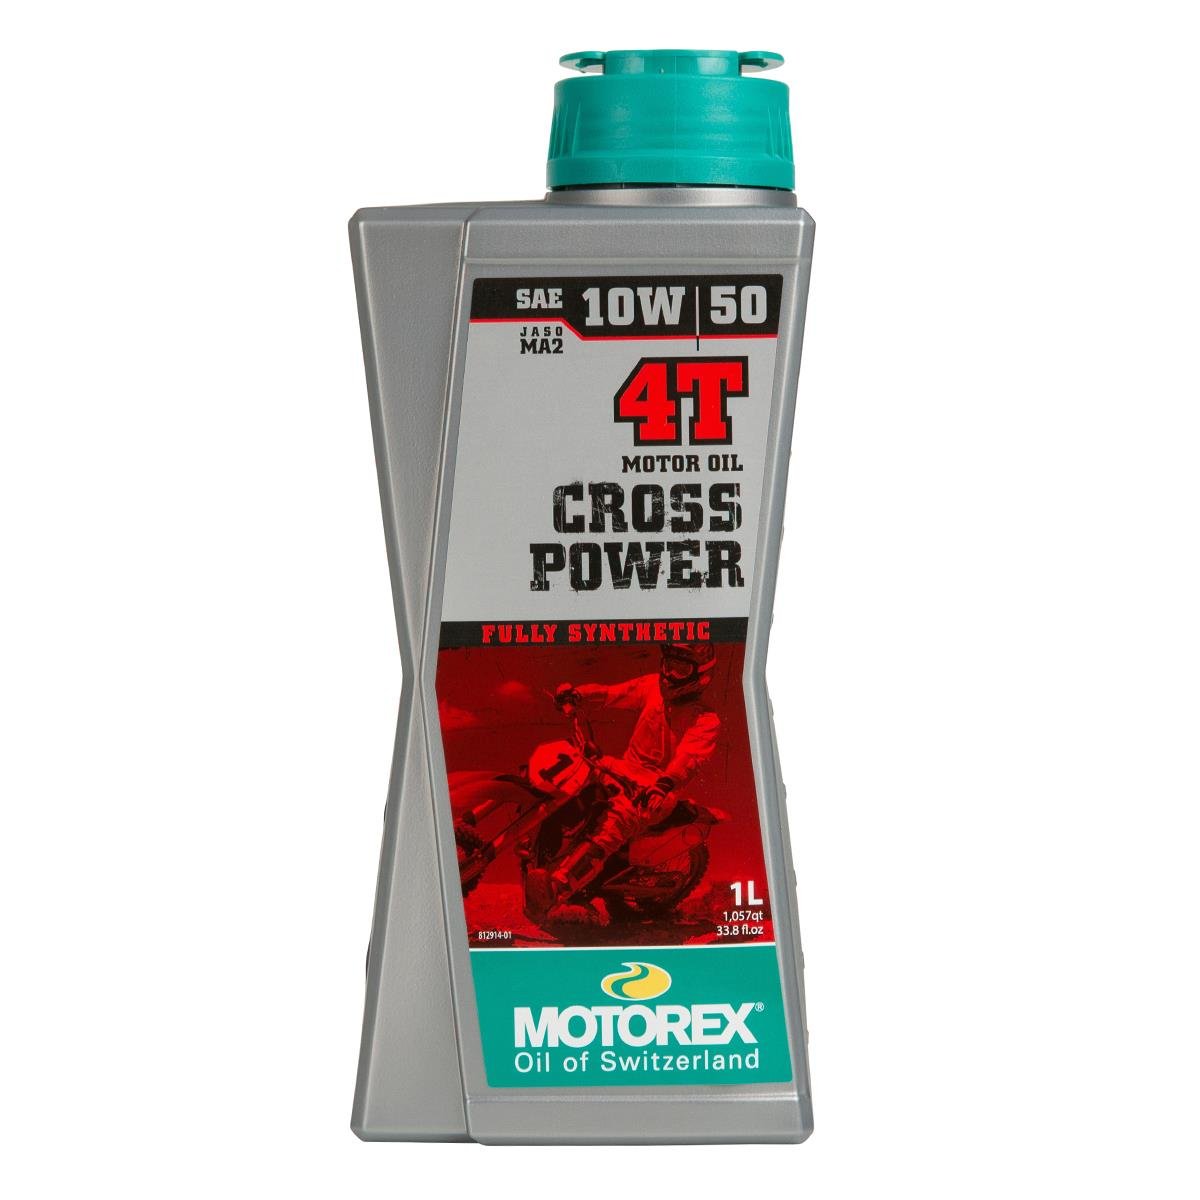 Motorex Cross Power 4T 10W/50, 1L